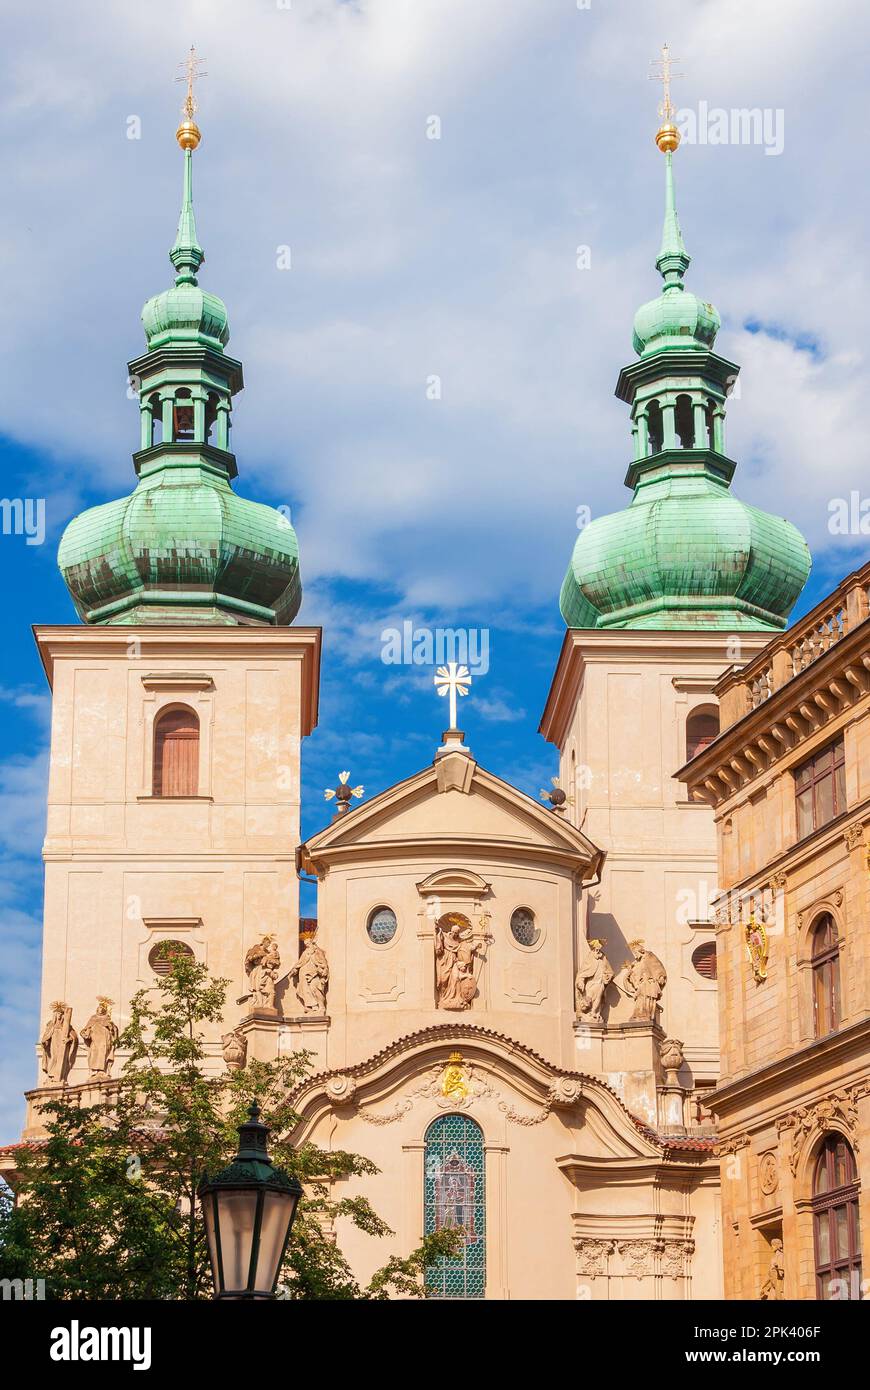 Art baroque et architecture à Prague. Église Saint-Havel du 18th siècle avec deux clochers à dôme d'oignon Banque D'Images